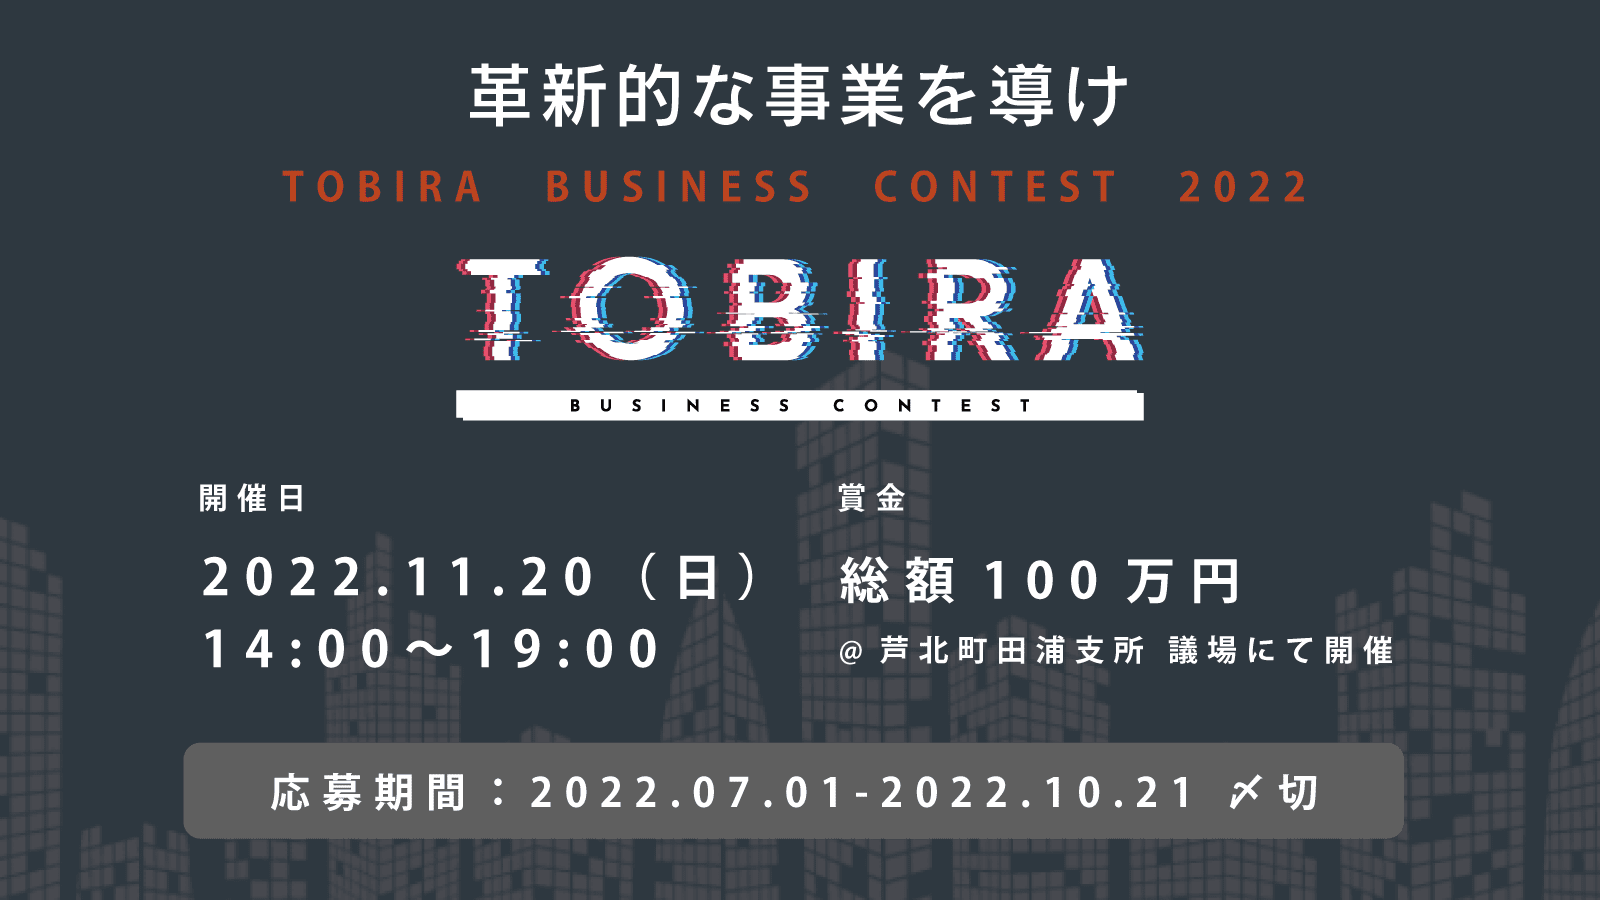 革新的な事業を導け「TOBIRA」